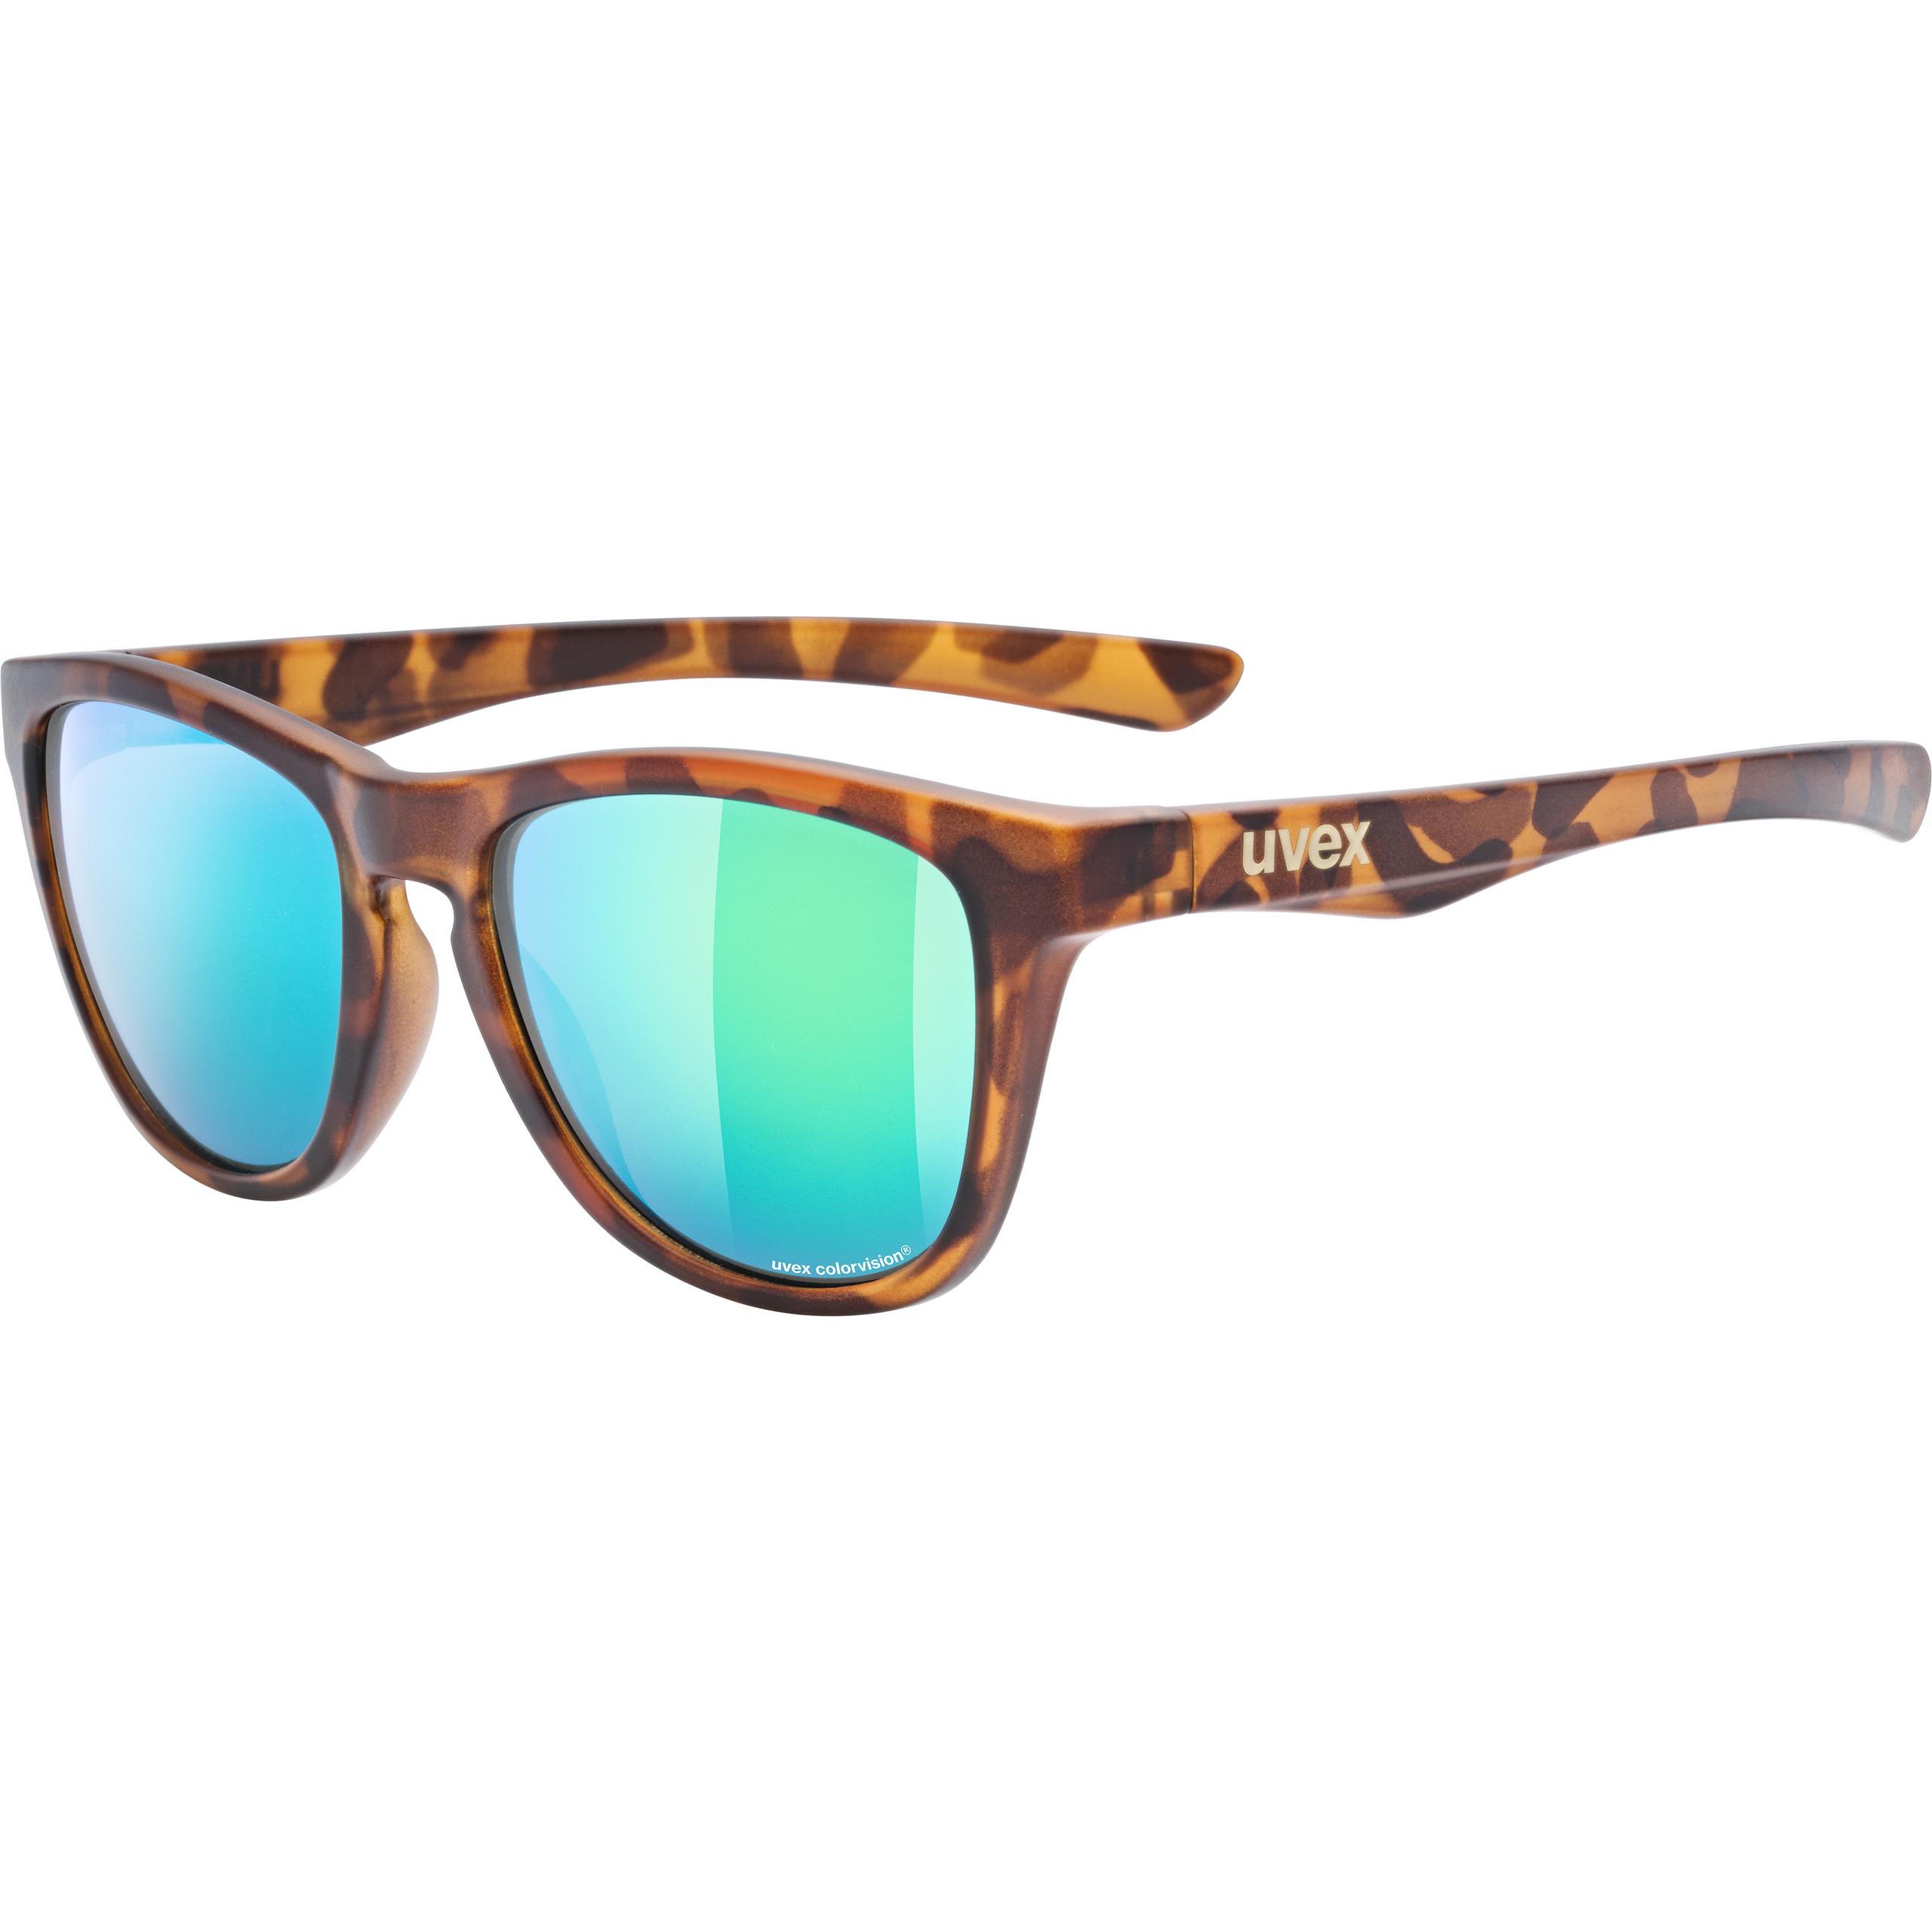 uvex lgl 41 Unisex Sportbrille Sonnenbrille Sunglasses Eyewear Radsportbrille 